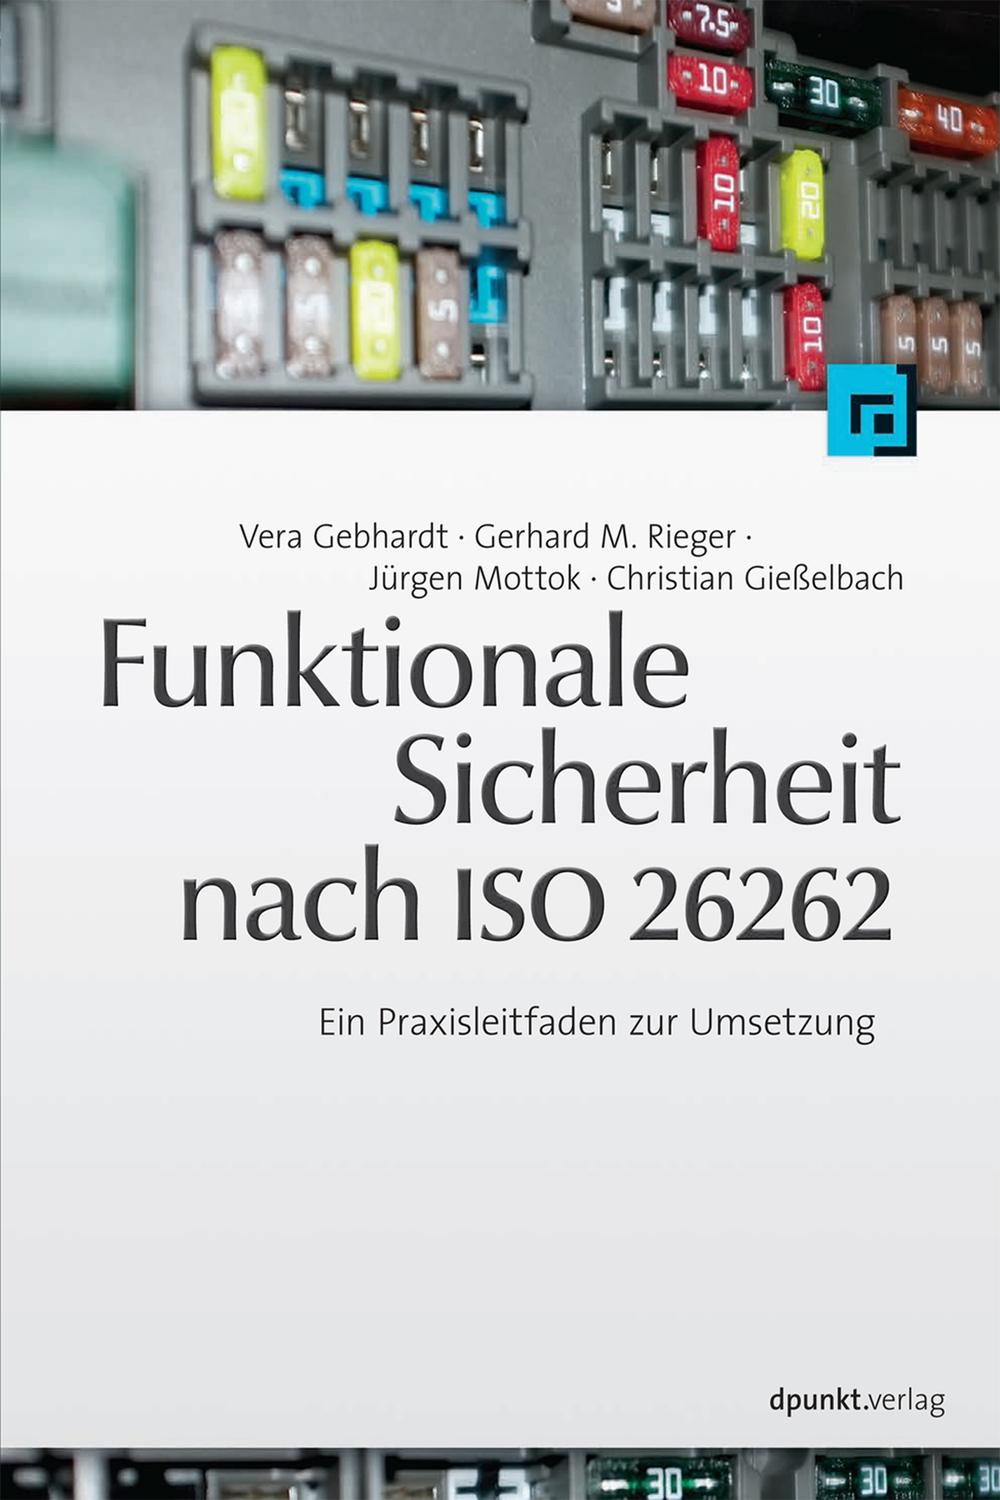 Funktionale Sicherheit nach ISO 26262 - Vera Gebhardt, Gerhard M. Rieger, Jürgen Mottok, Christian Gießelbach